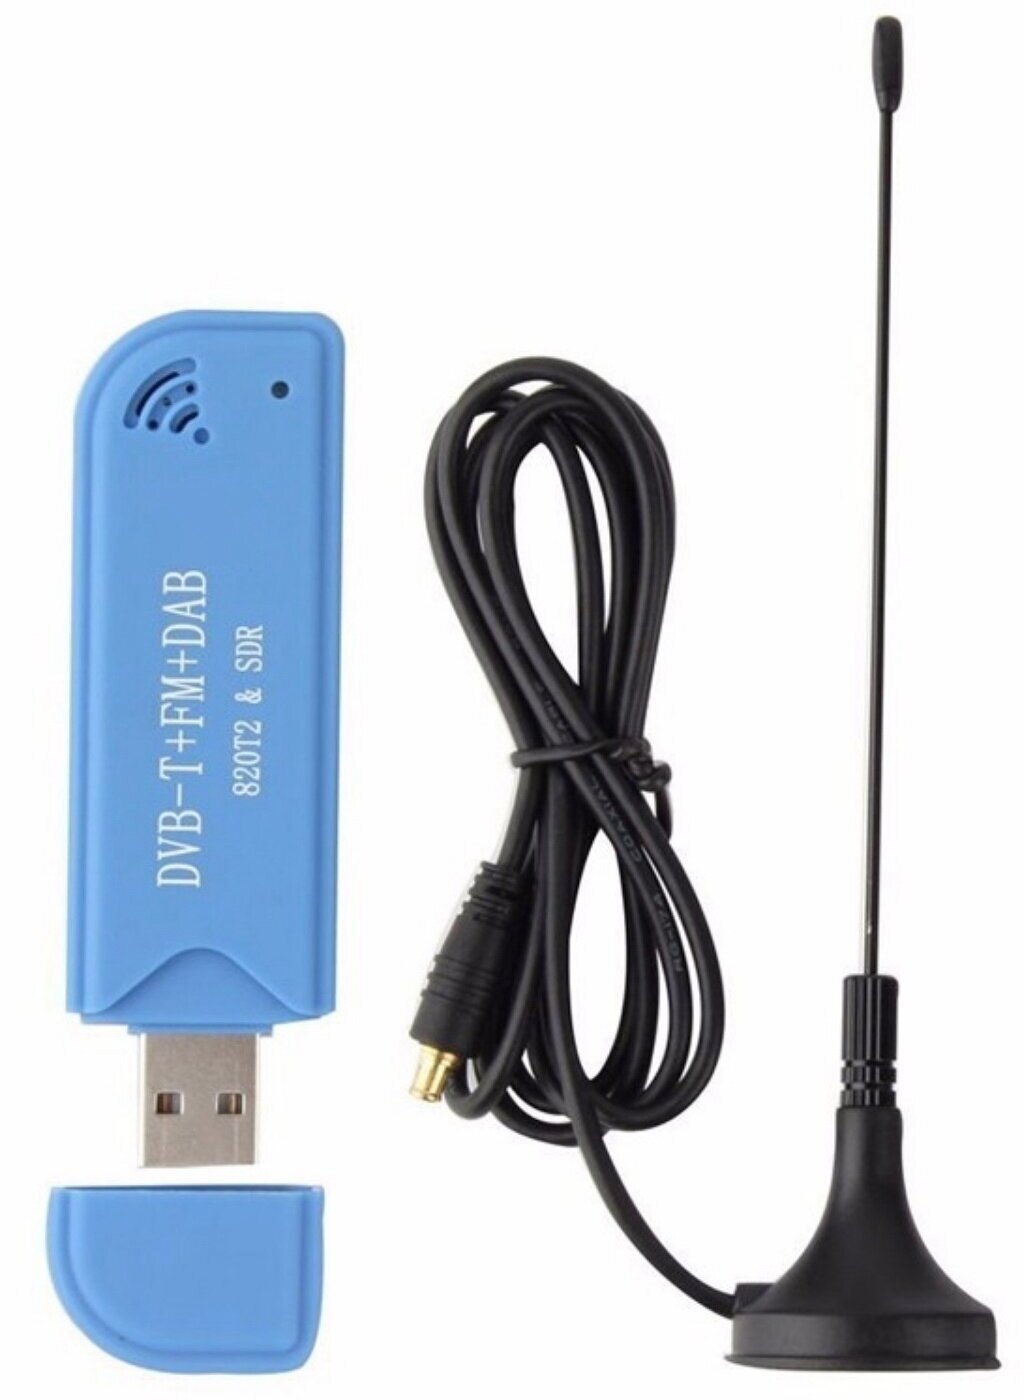 USB радиоприемник RTL-SDR Широкополосный радиосканер для компьютера планшета телефона